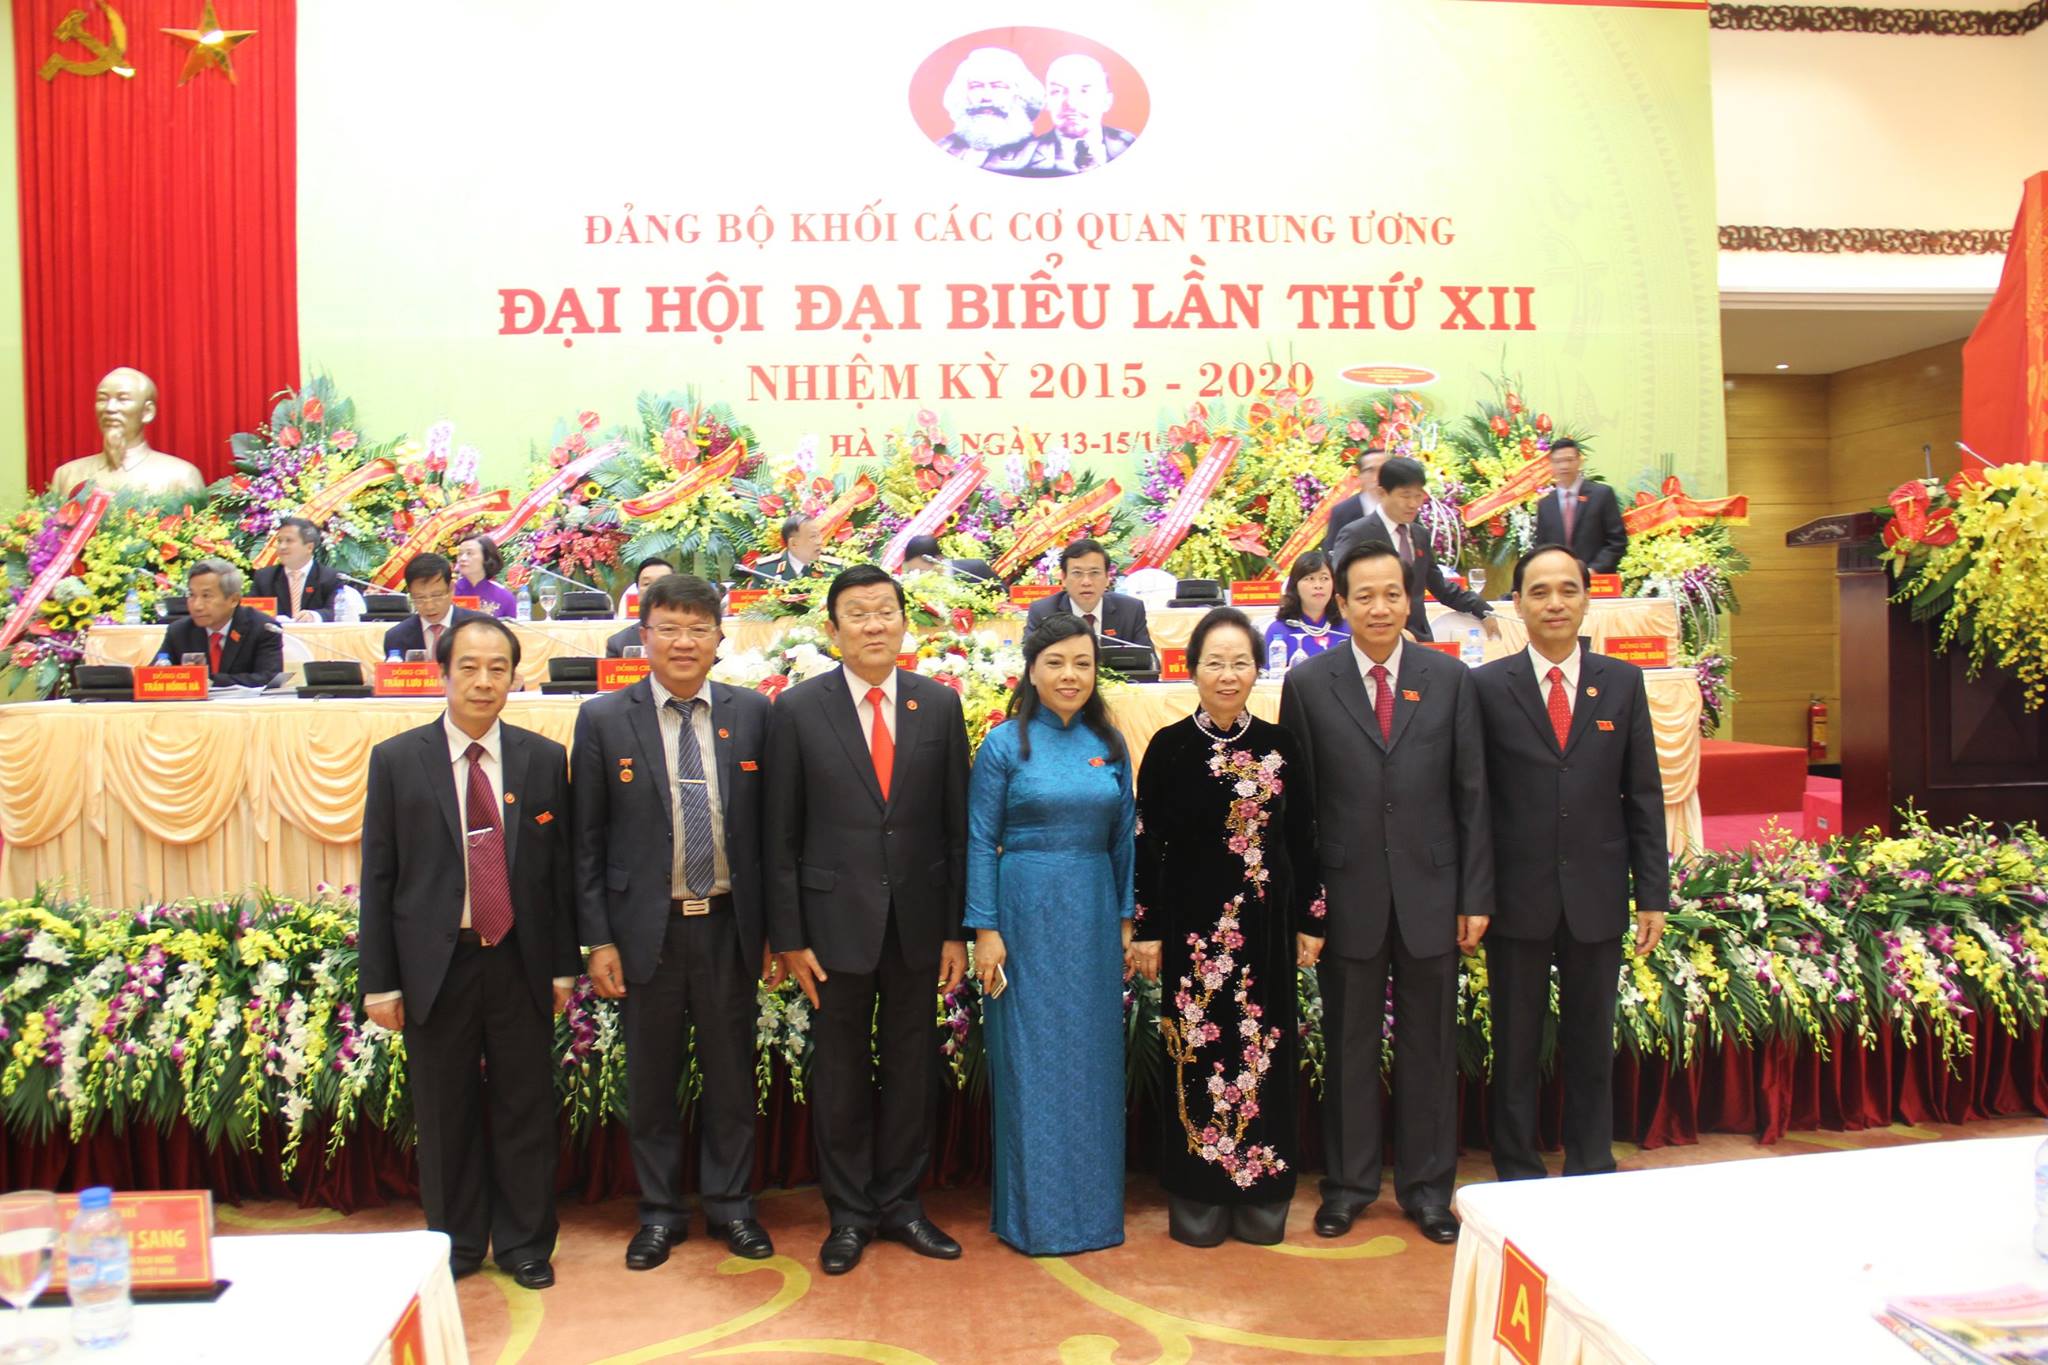 Đoàn đại biểu Đảng bộ Bộ Y tế tham dự đại hội Đảng bộ khối các cơ quan trung ương lần thứ XII, nhiệm kỳ 2015-2020